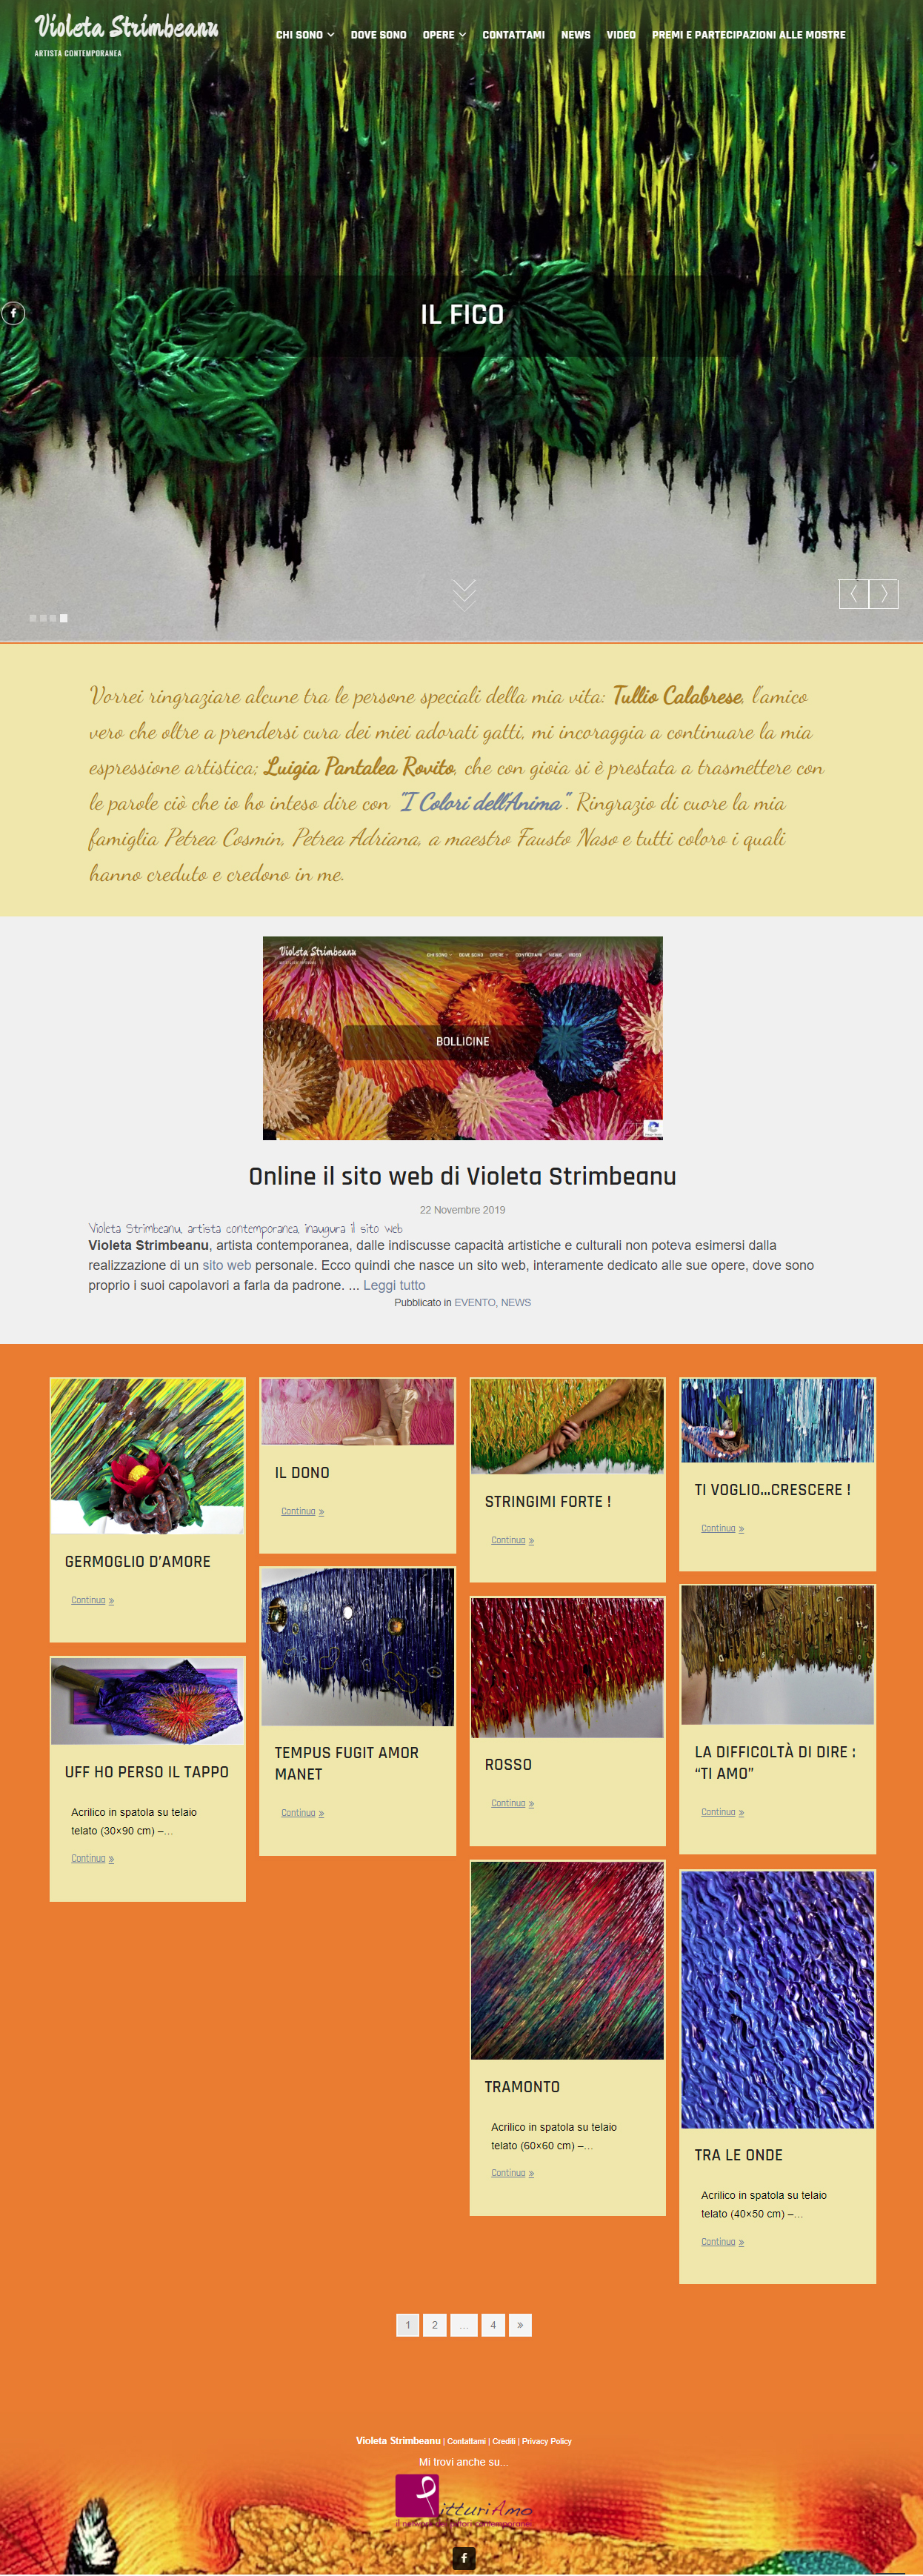 Il sito dell'artista Violeta Strimbeanu - Homepage